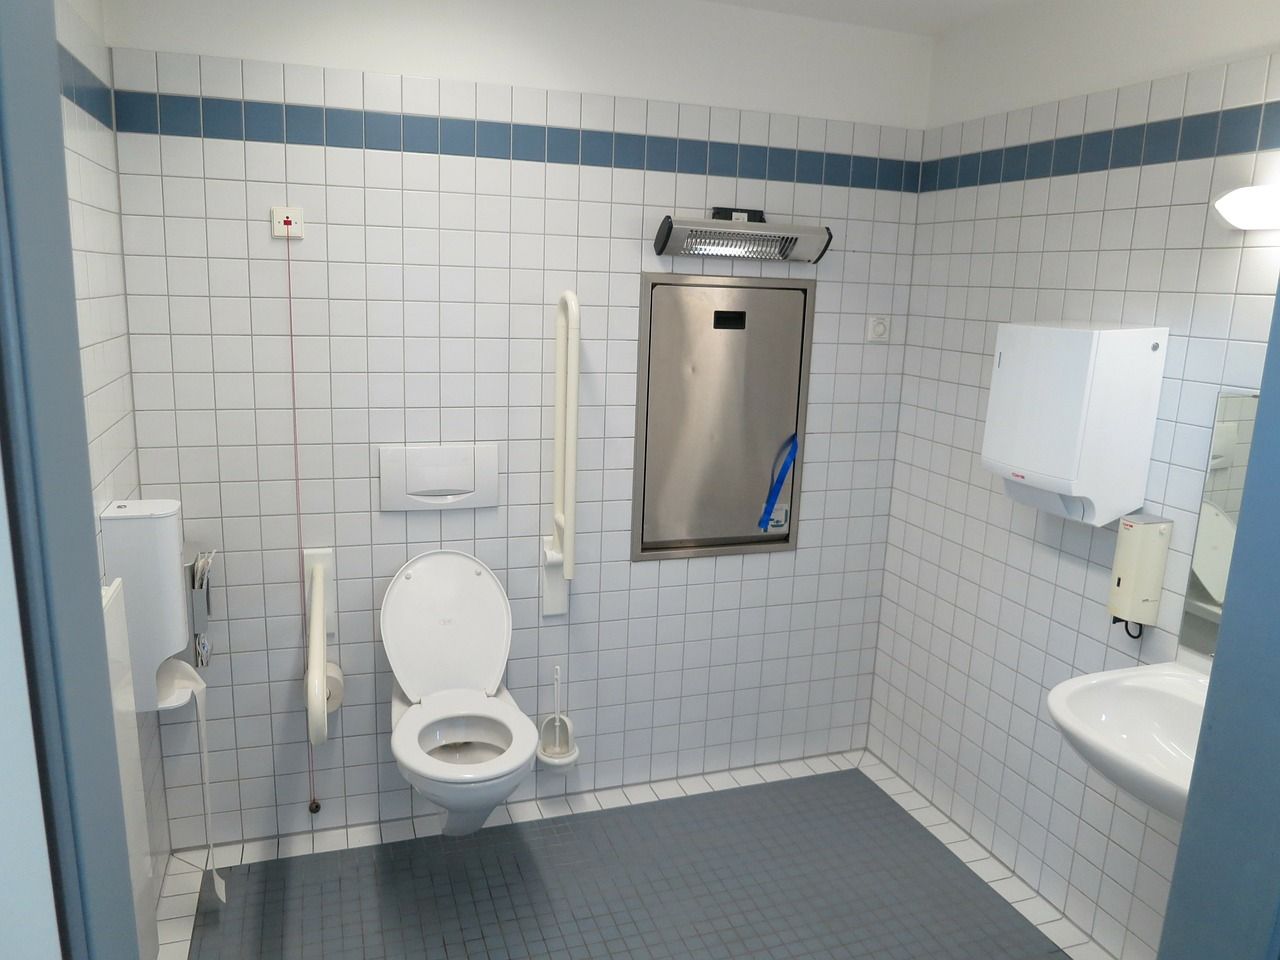 Jak powinny być wyposażone publiczne toalety?